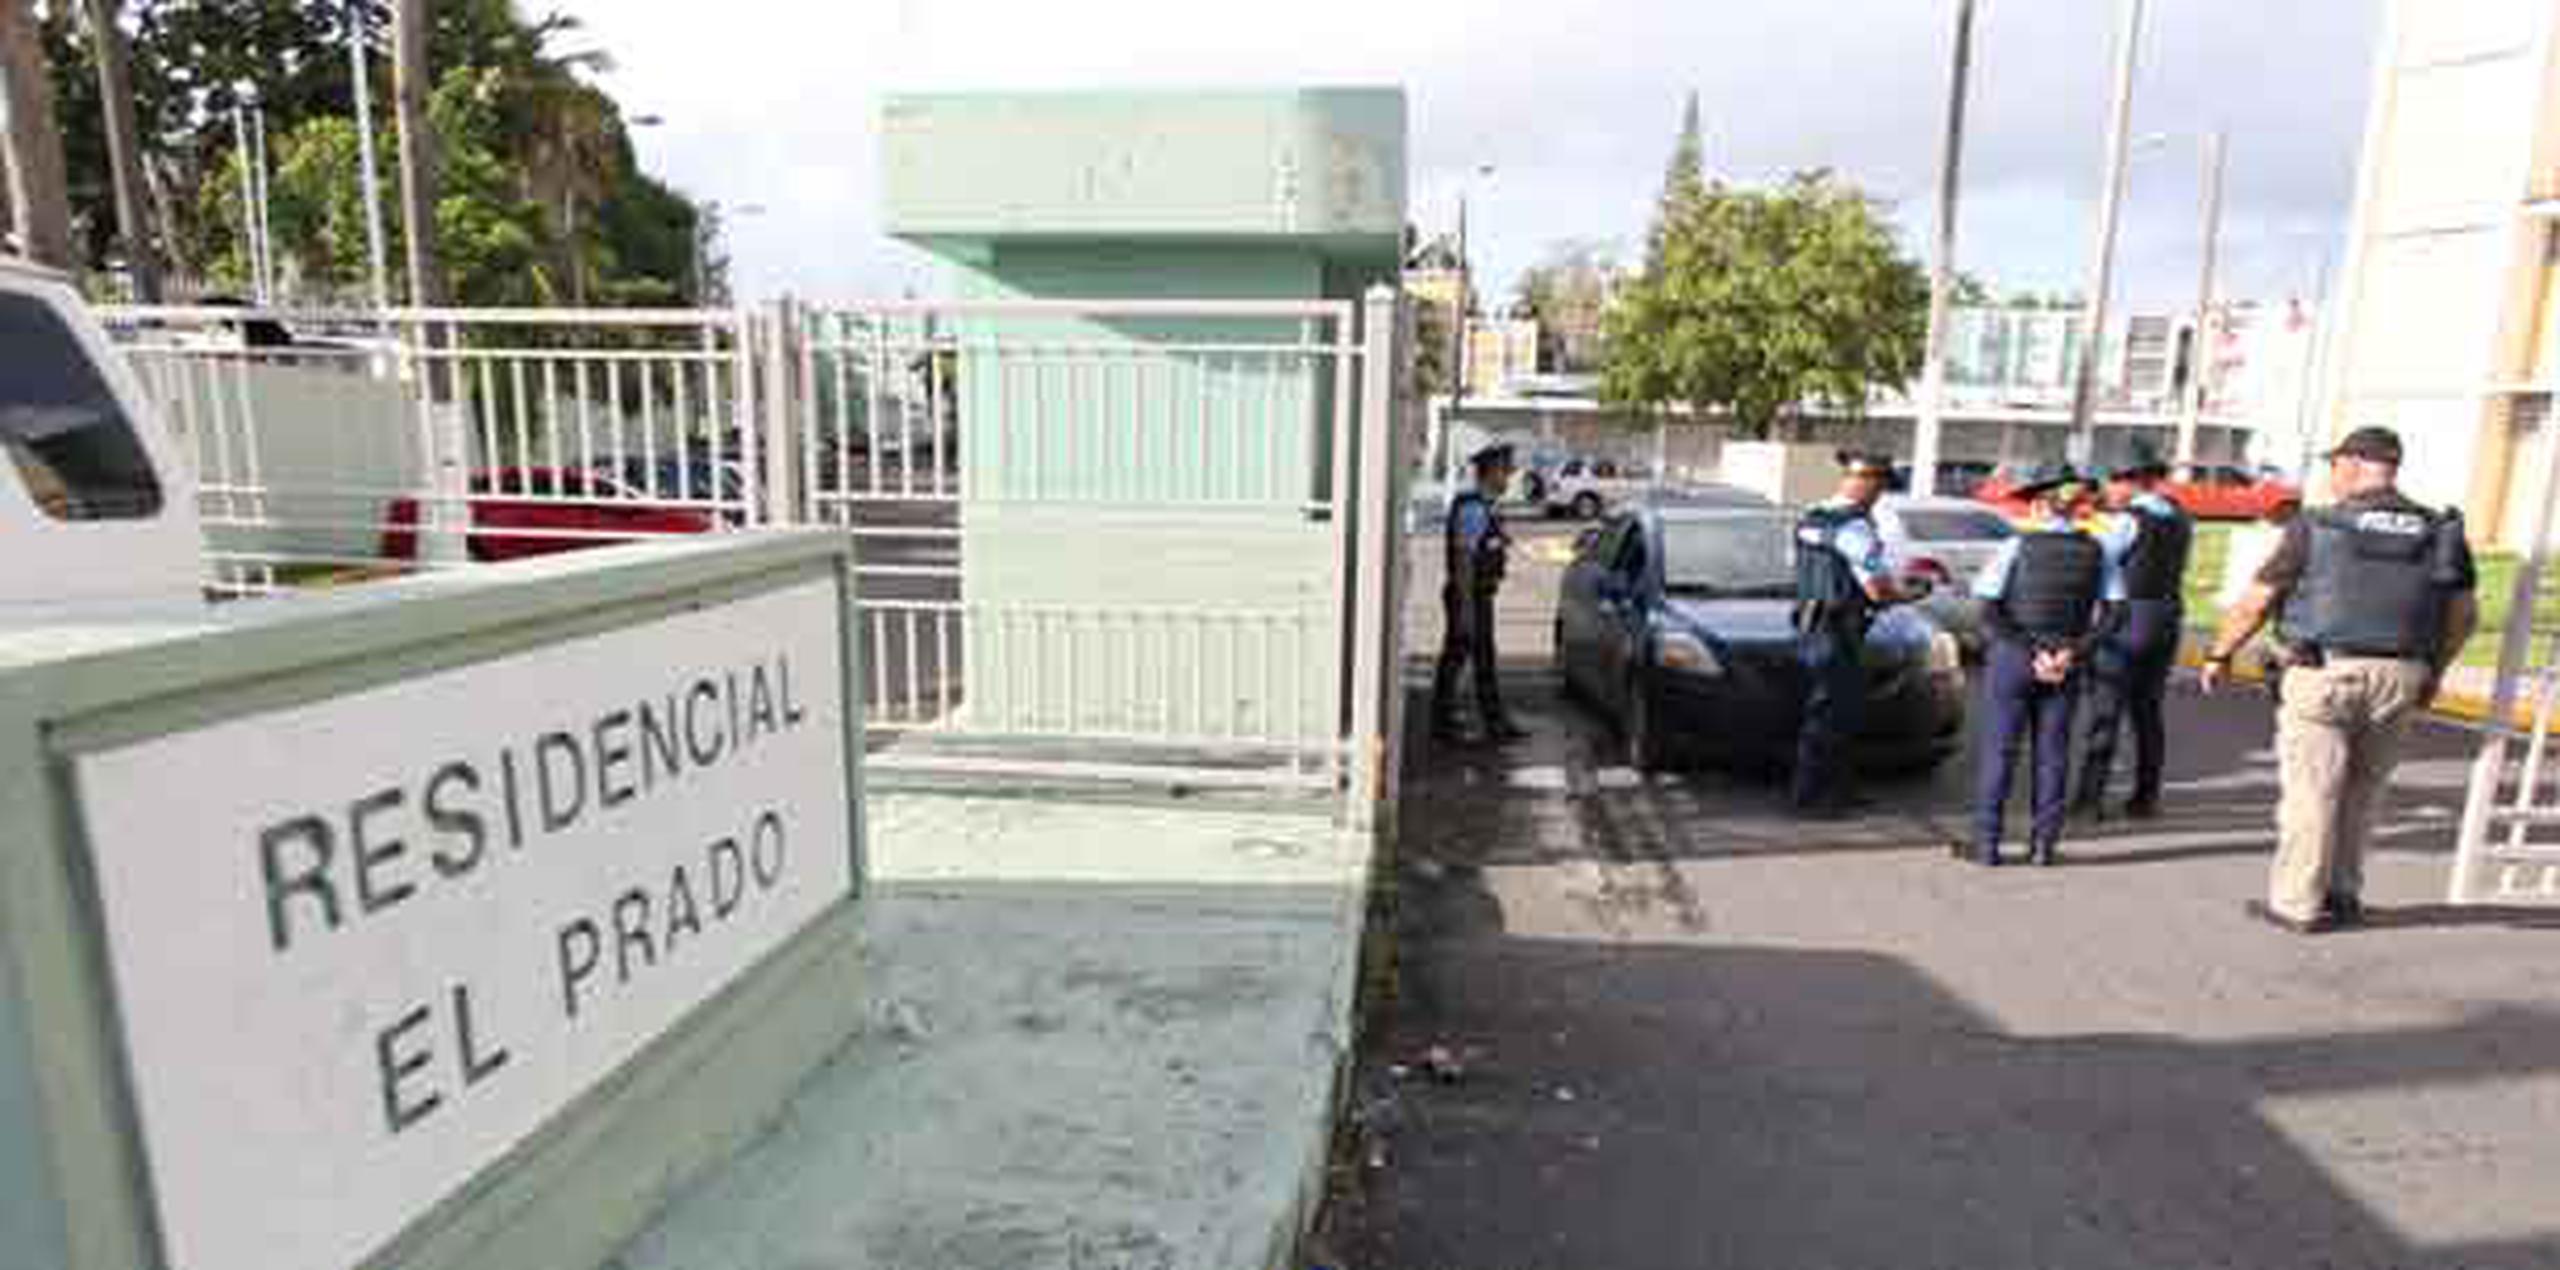 Argenis E. Bruzon, de 30 años, que fue uno de los individuos arrestados ayer en medio de un operativo realizado por la Policía en el residencial El Prado en Río Piedras. (alex.figueroa@gfrmedia.com)